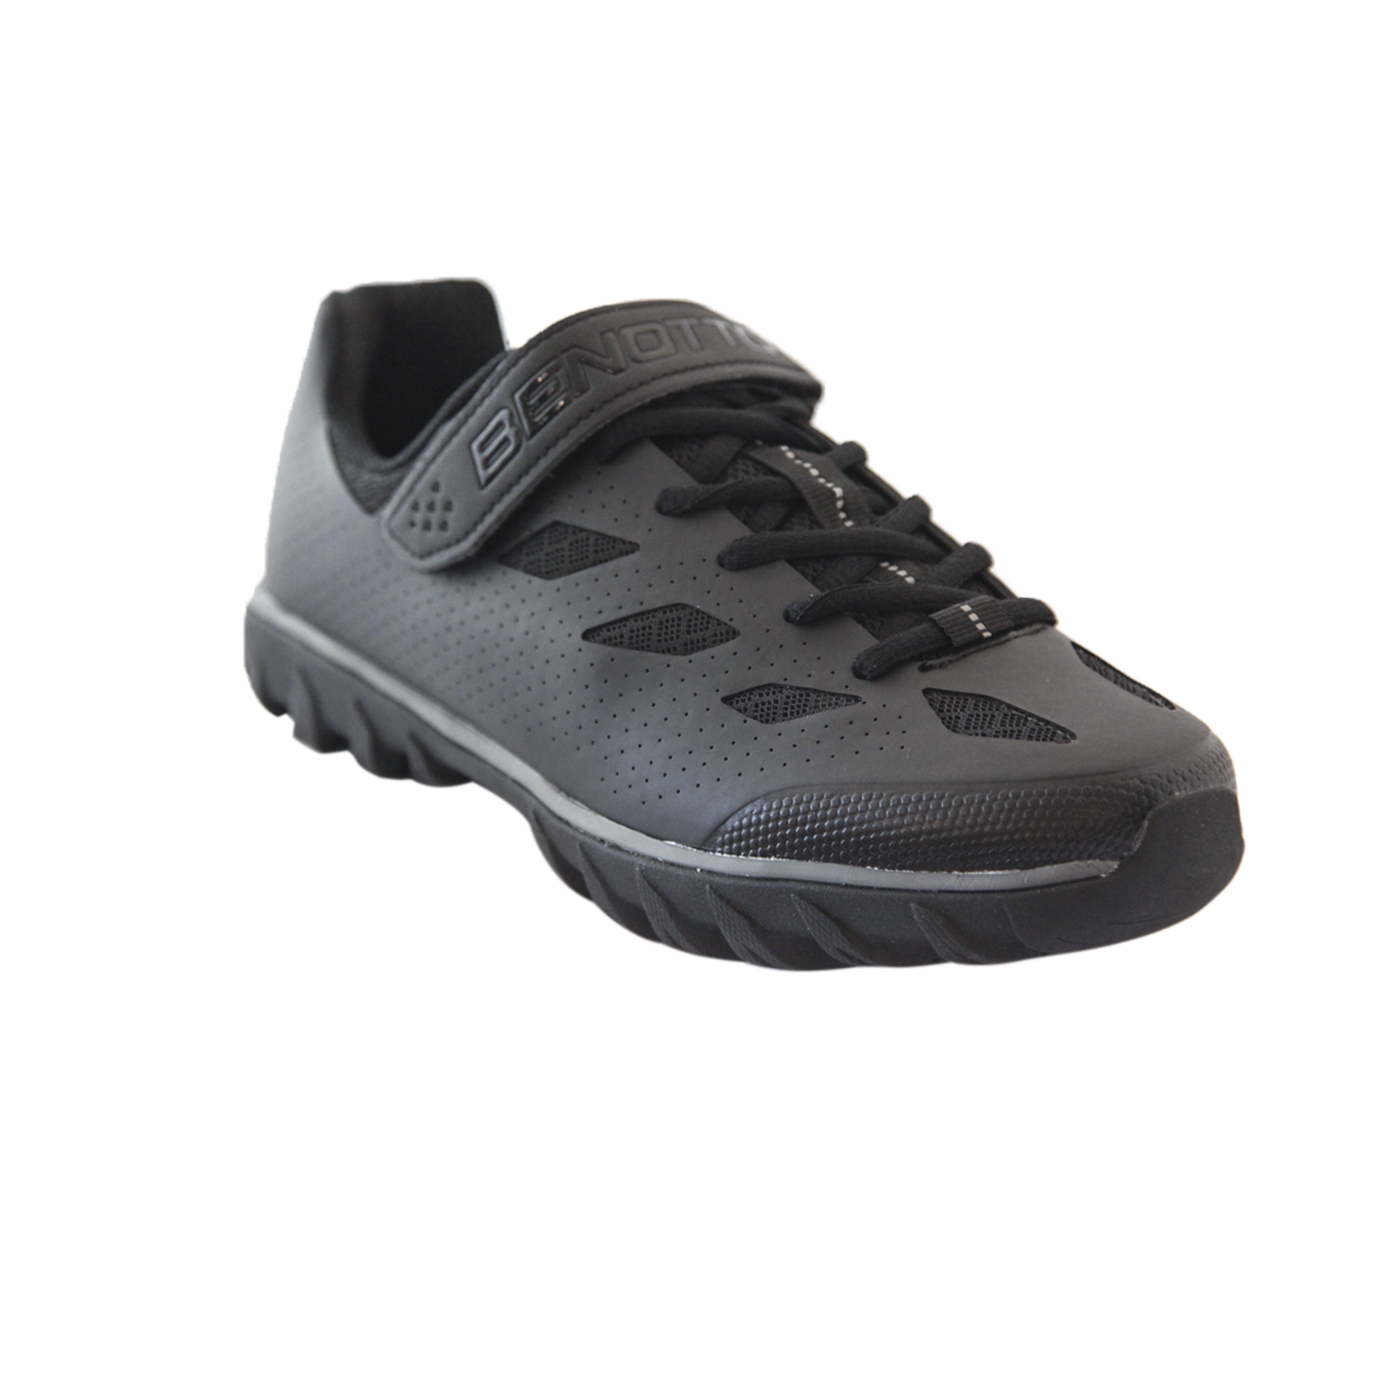 Zapato BENOTTO Montaña-Spinning con agujeta Med:40.0/25.6 Negro